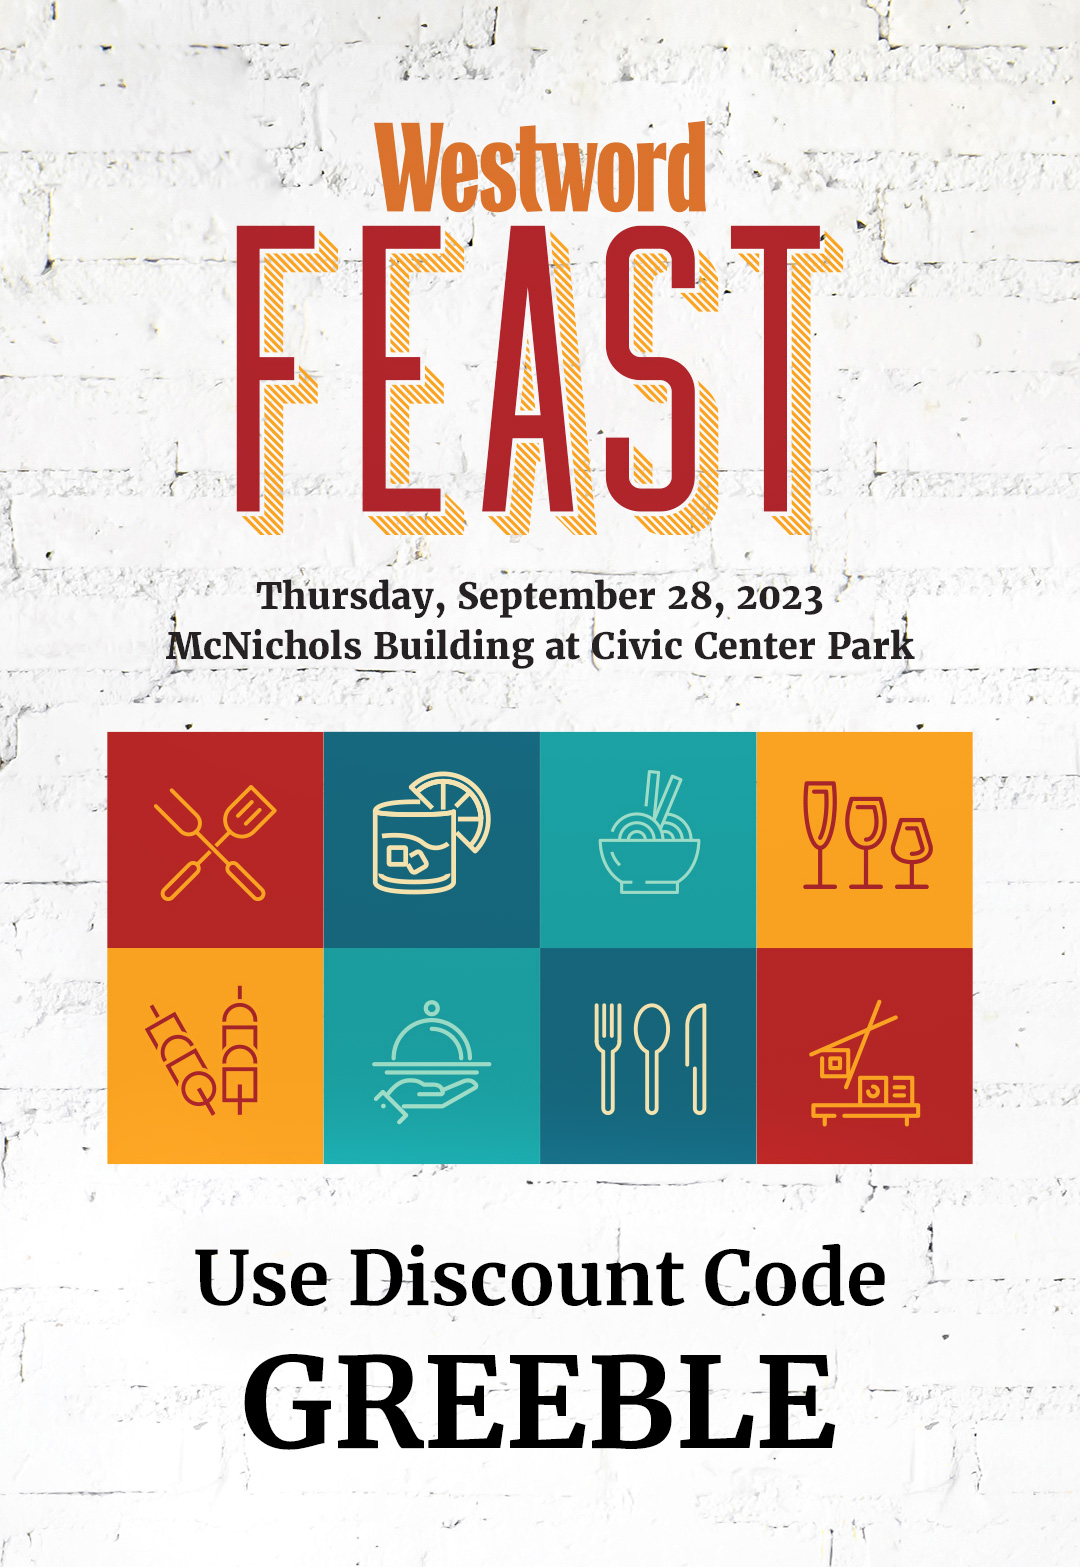 Westword Feast Discount Code 2023 - Denver Food Tasting Event